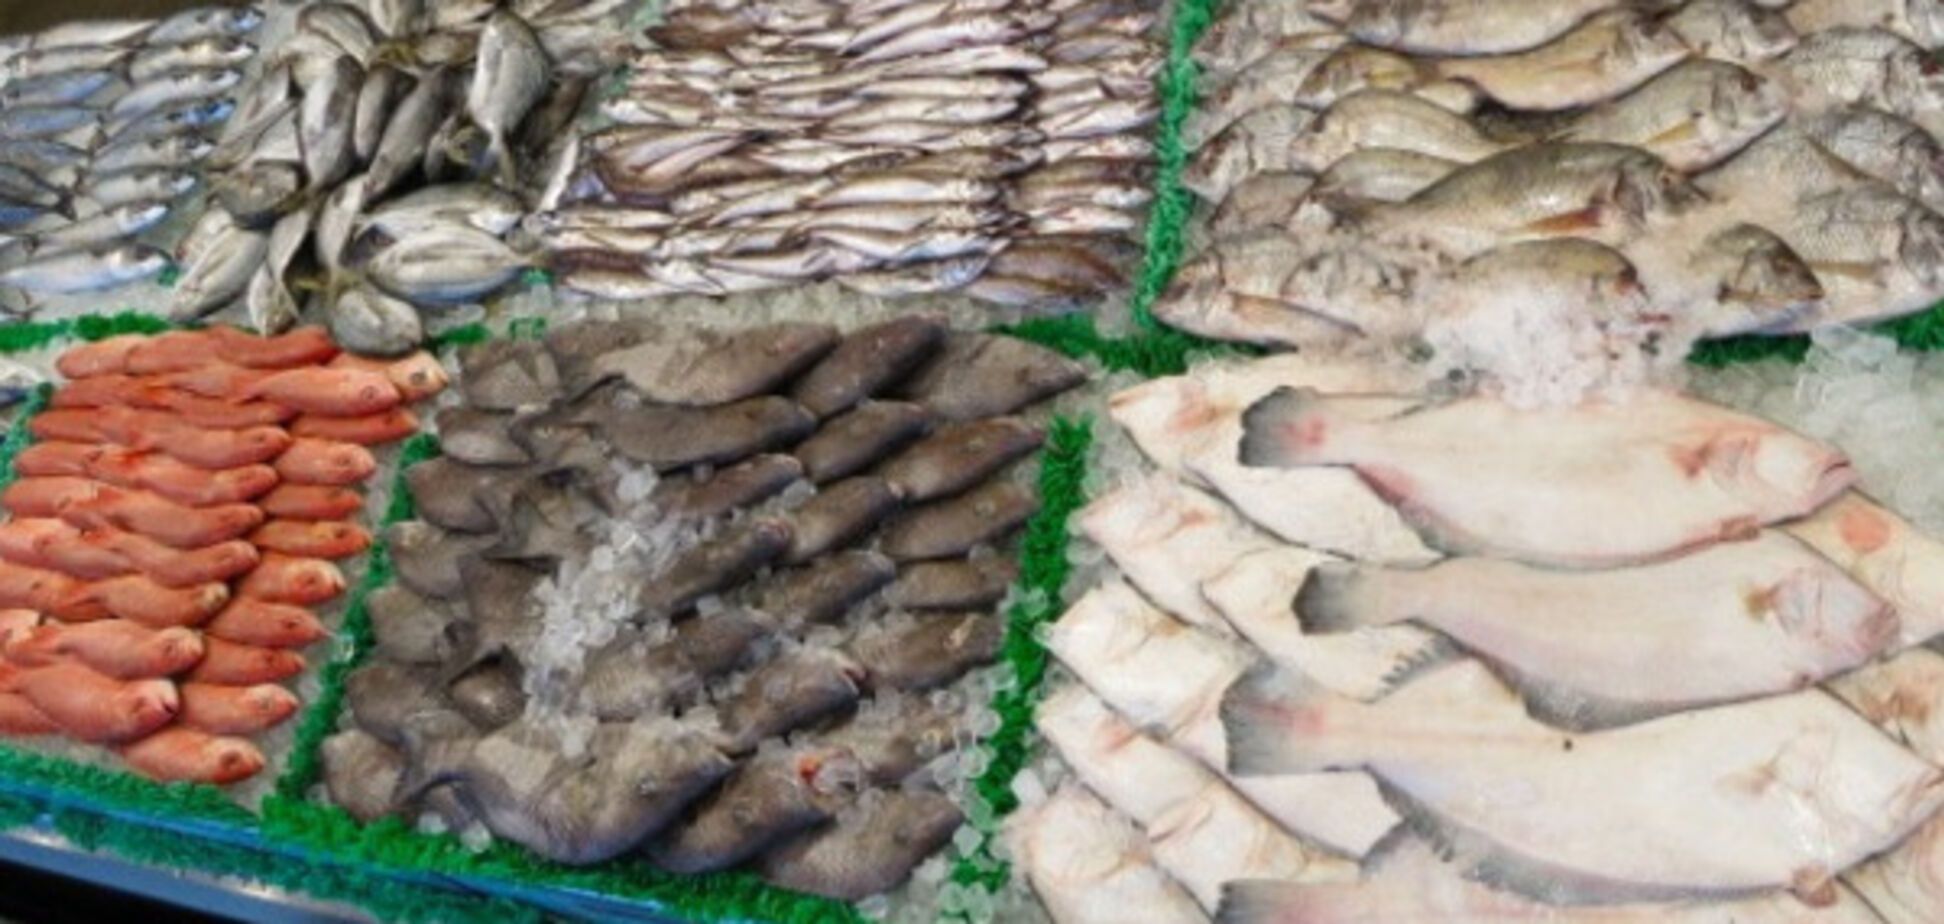 Риба в магазинах Києва